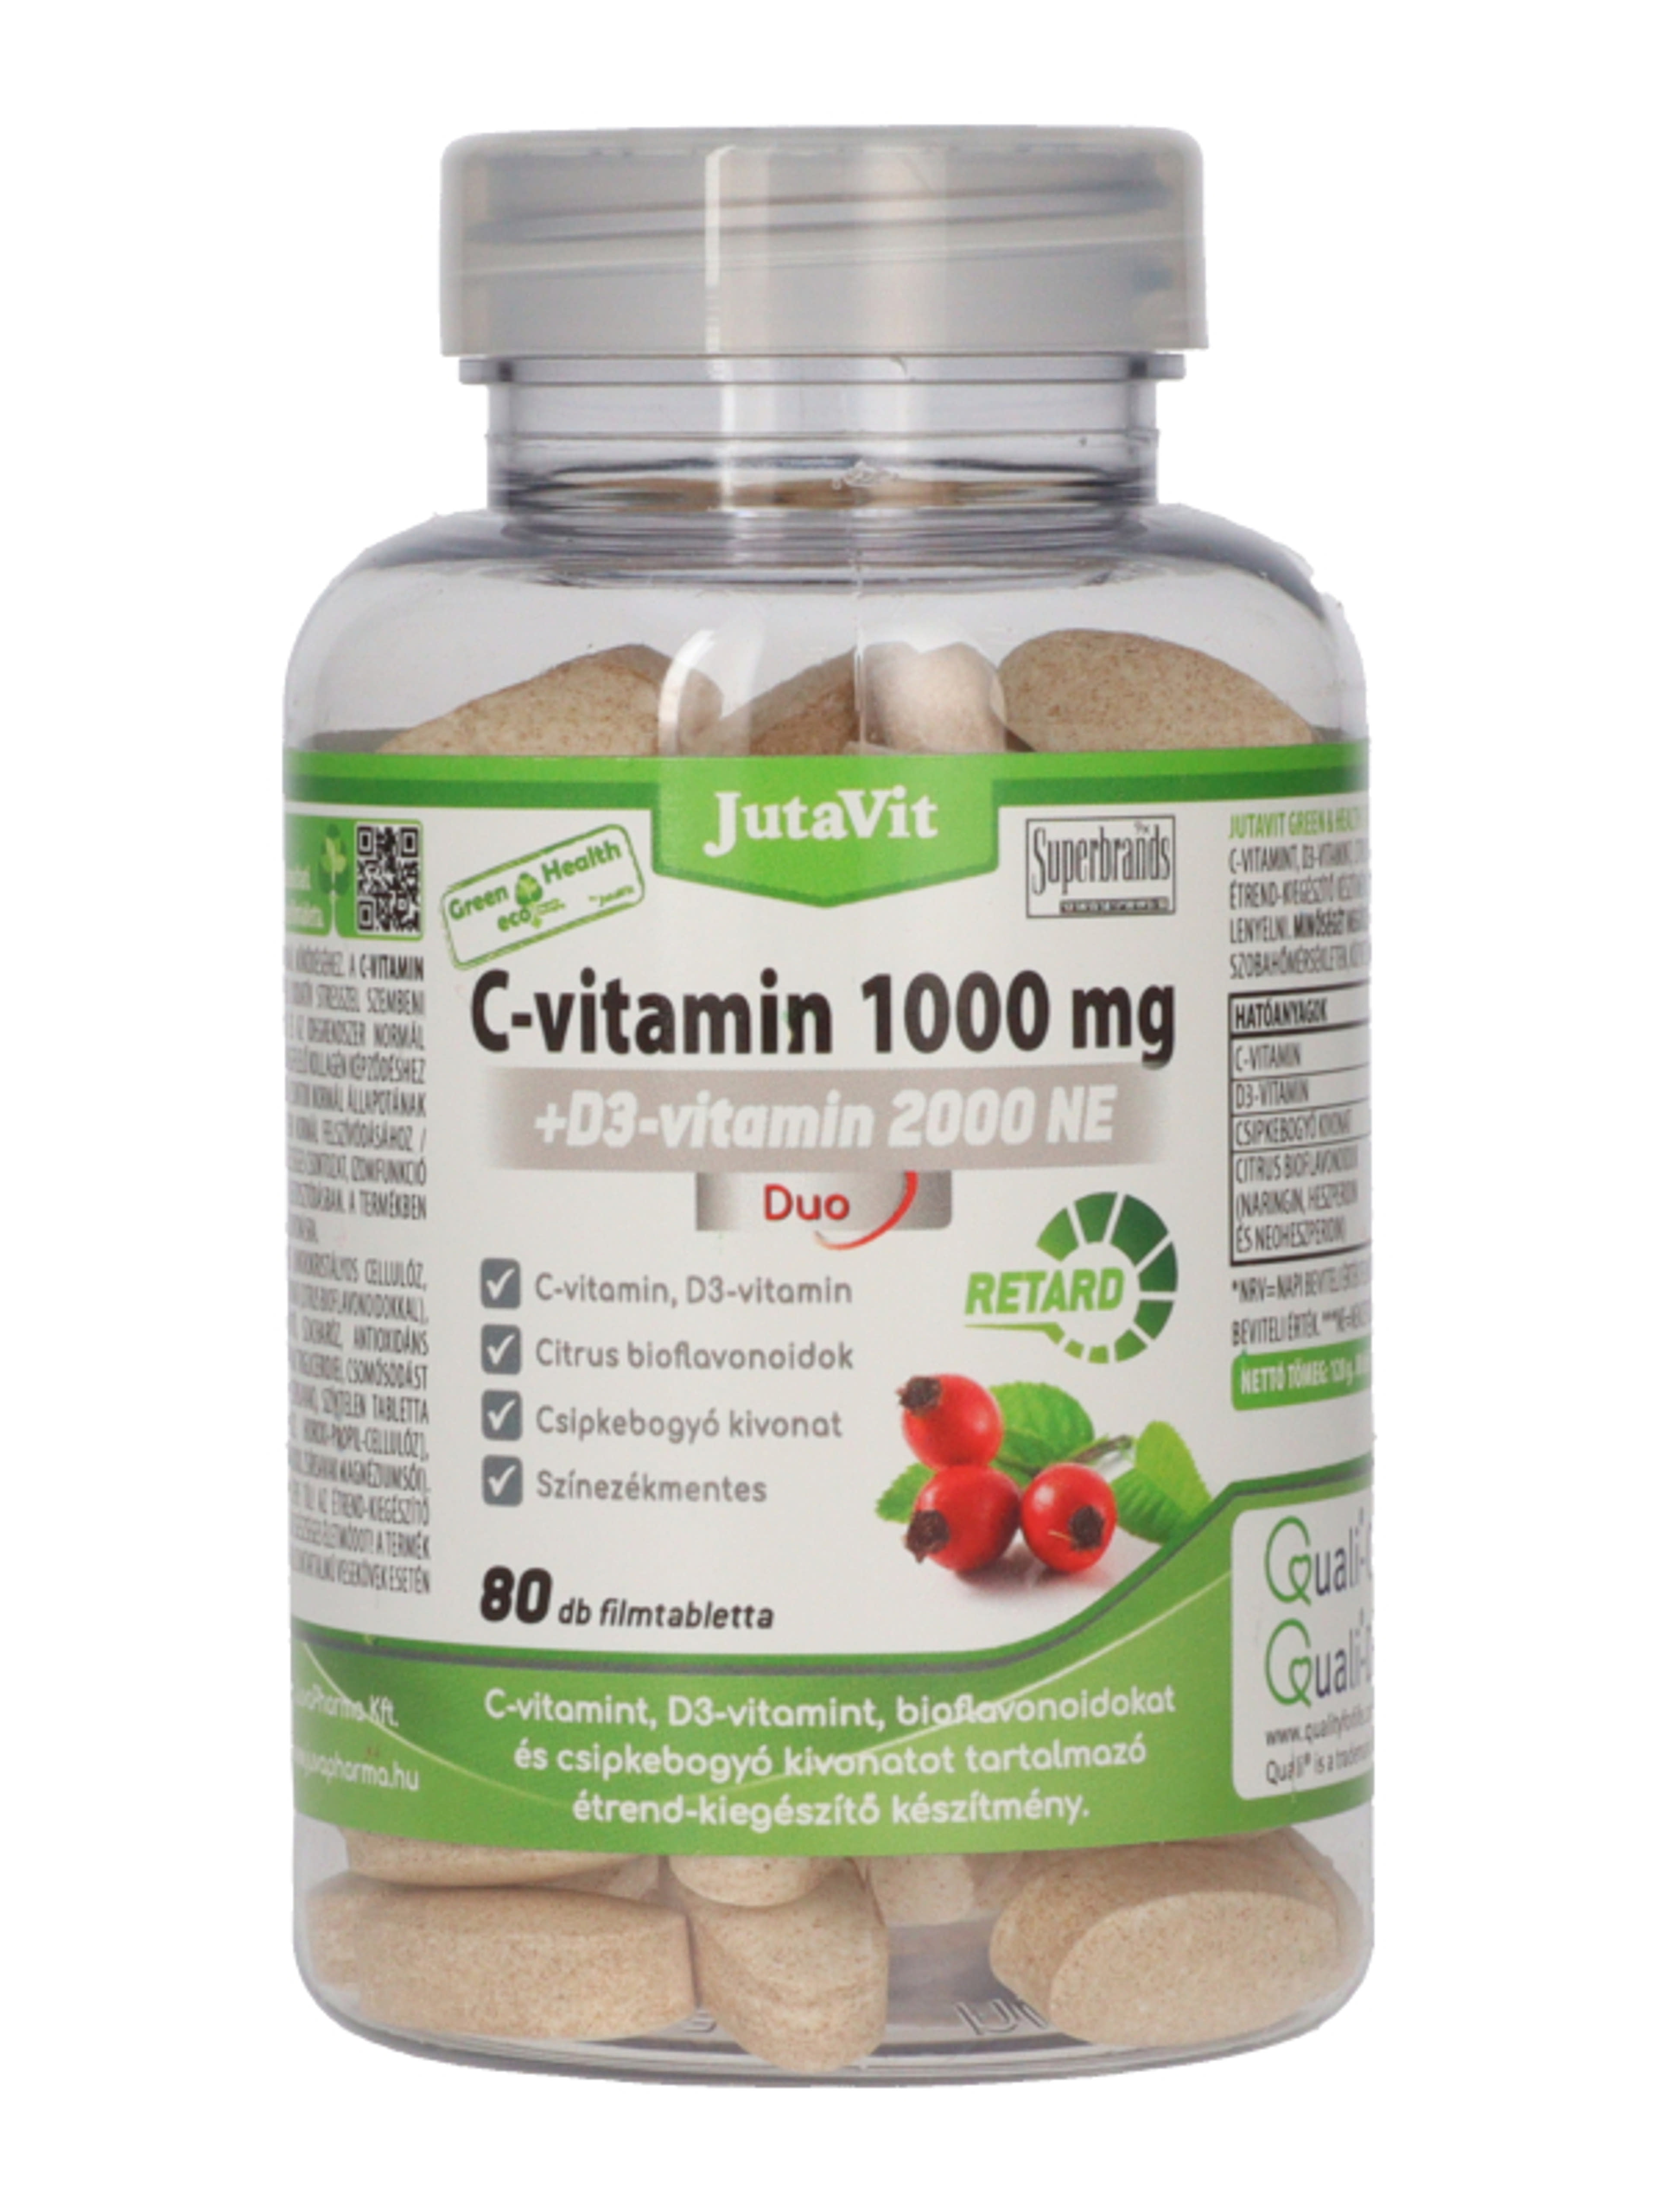 Jutavit Green & Health C-vitamin 1000 mg + D3- vitamin 2000 NE Duo étrend-kiegészítő filmtabletta - 80 db-2